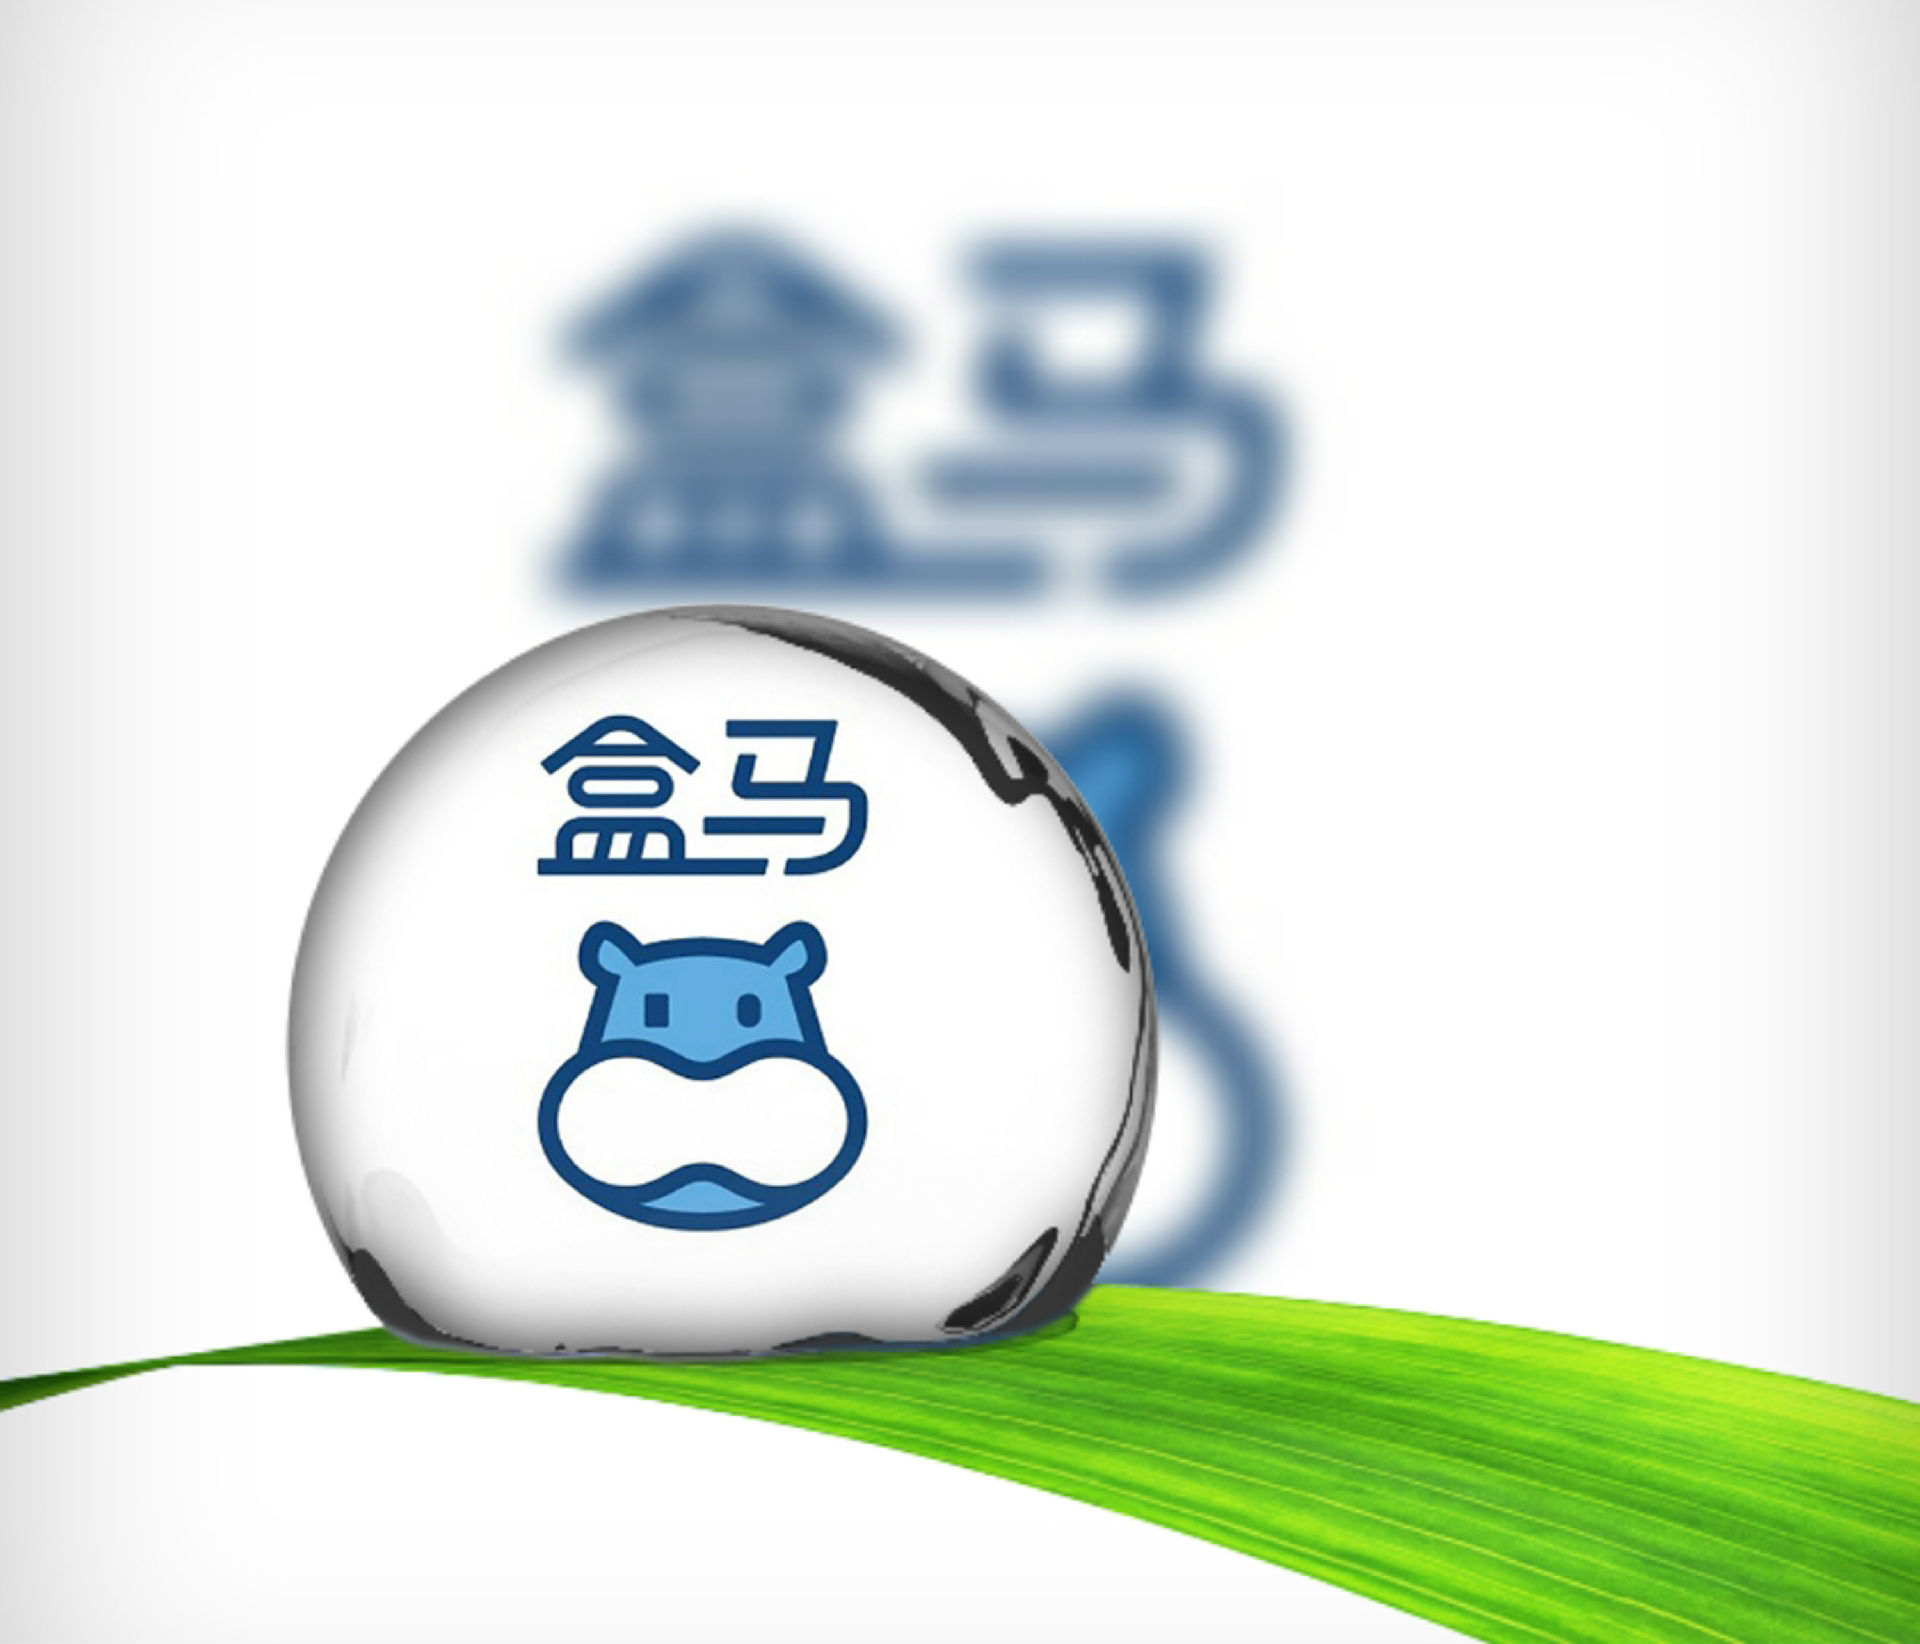 盒马鲜生logo设计图片